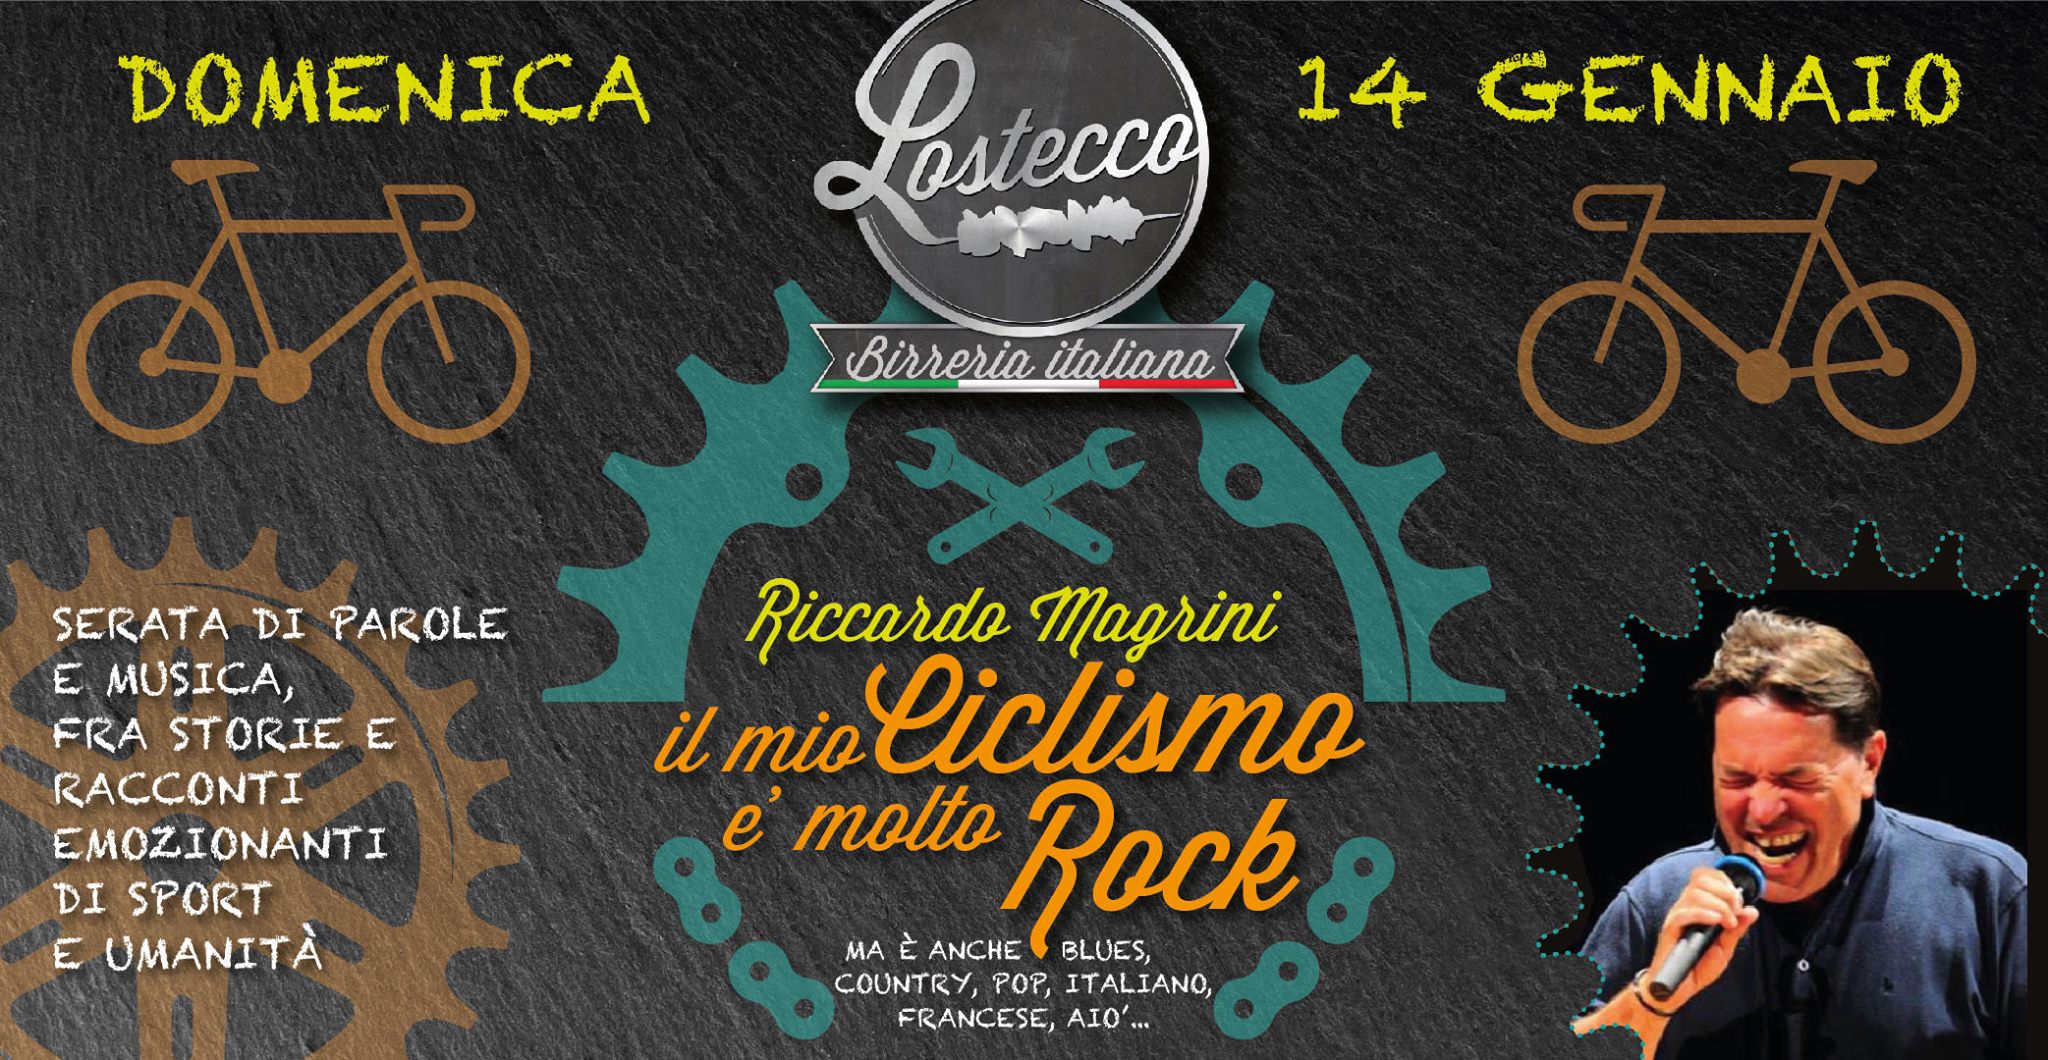 Riccardo Magrini: “il mio ciclismo è molto rock”